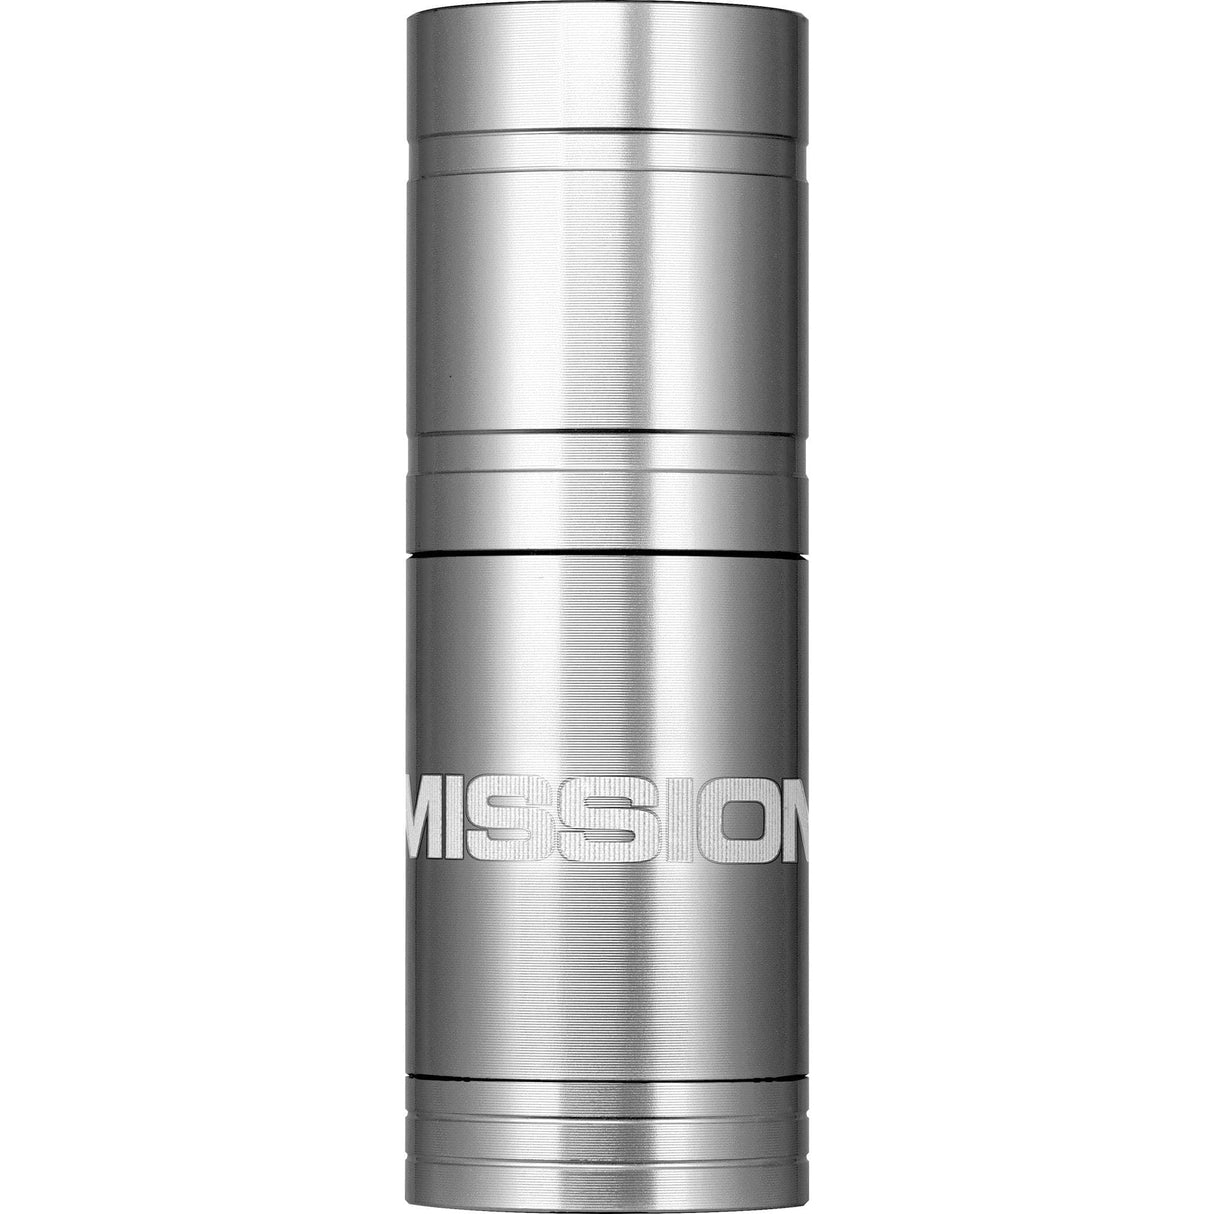 Mission Soft Tip Dispenser - holds 25 tips - Magnetic Holder